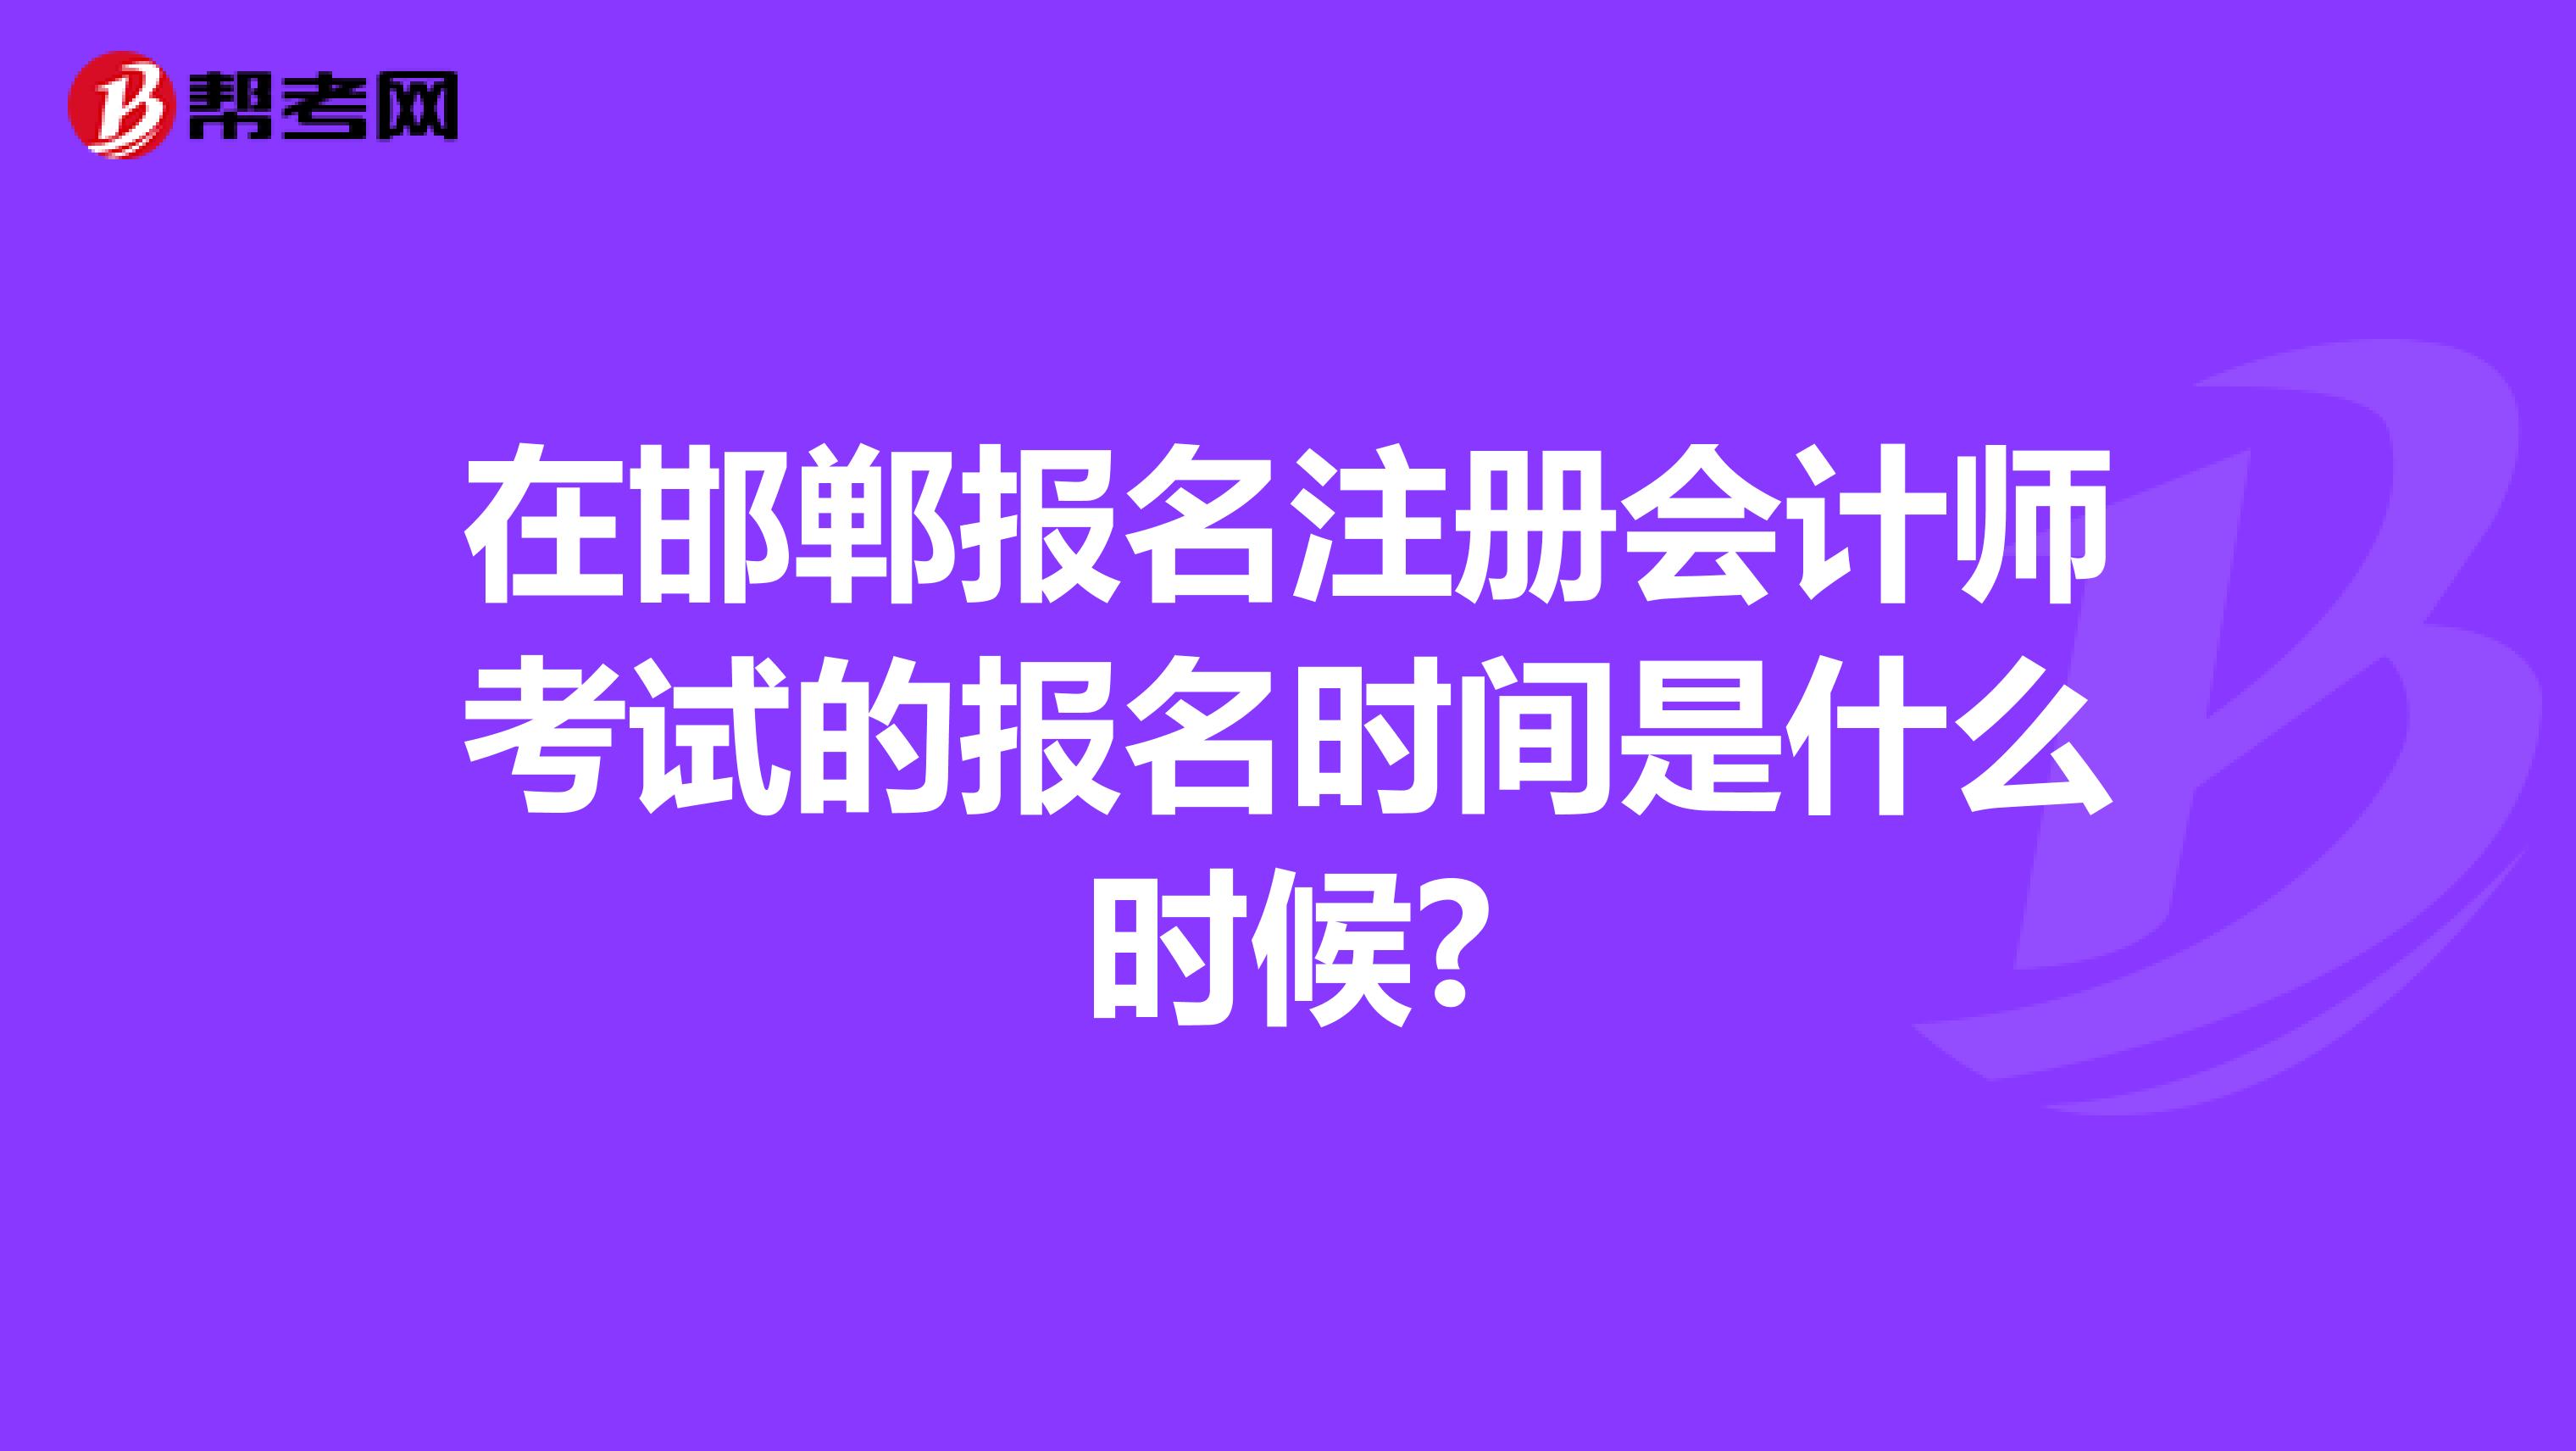 在邯郸报名注册会计师考试的报名时间是什么时候?